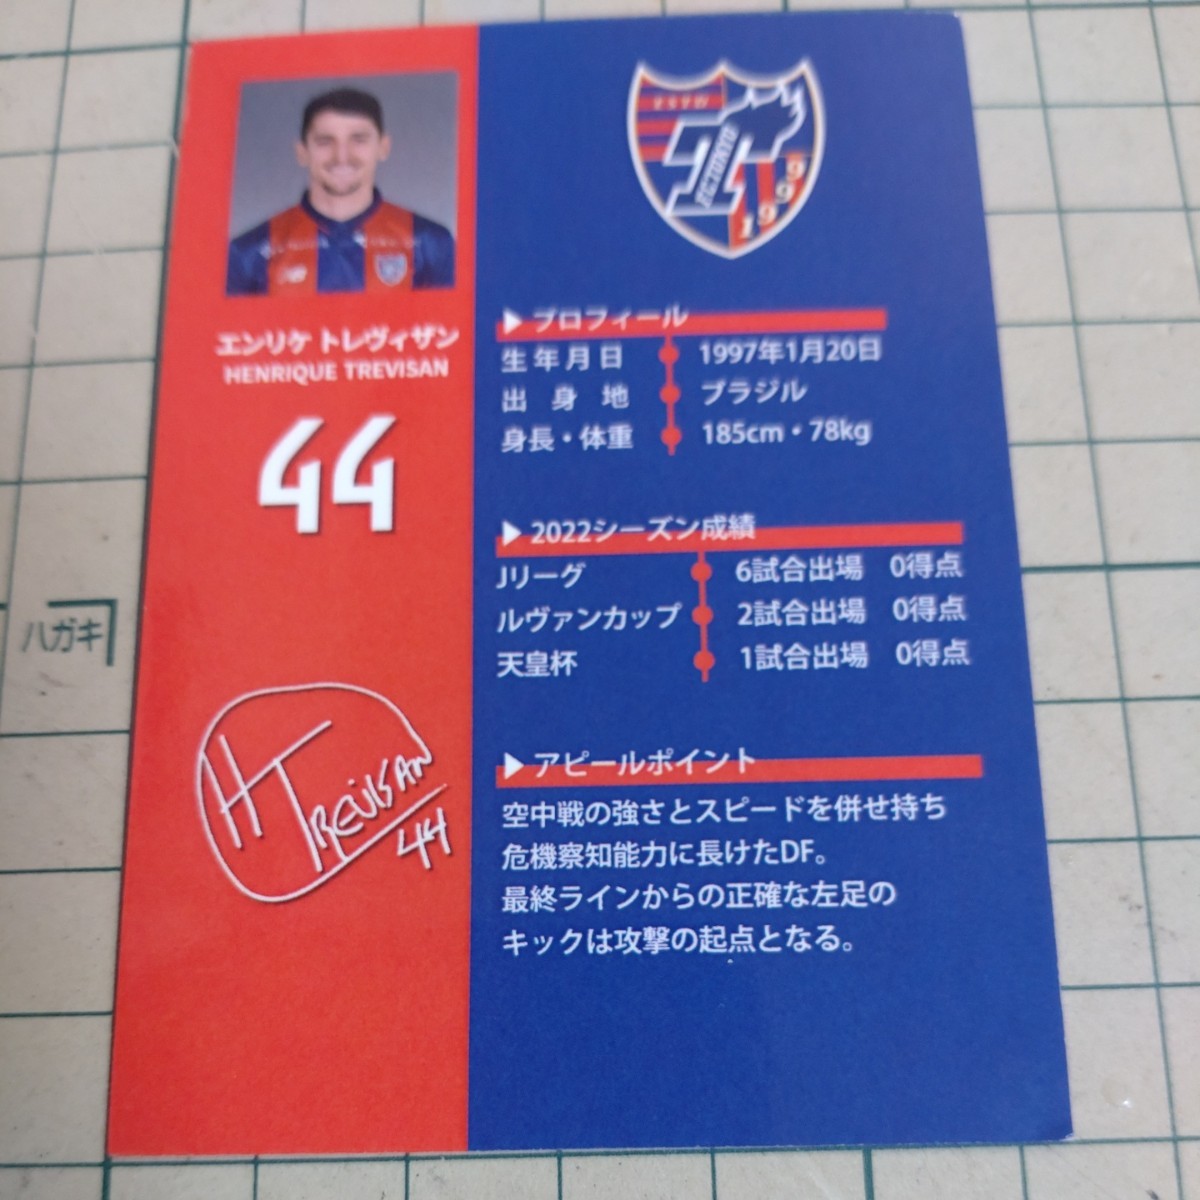 2023年FC東京 　オフィシャルメンバーシップ 入場特典カード「44番　エンリケ　トレヴィザン選手」_画像2